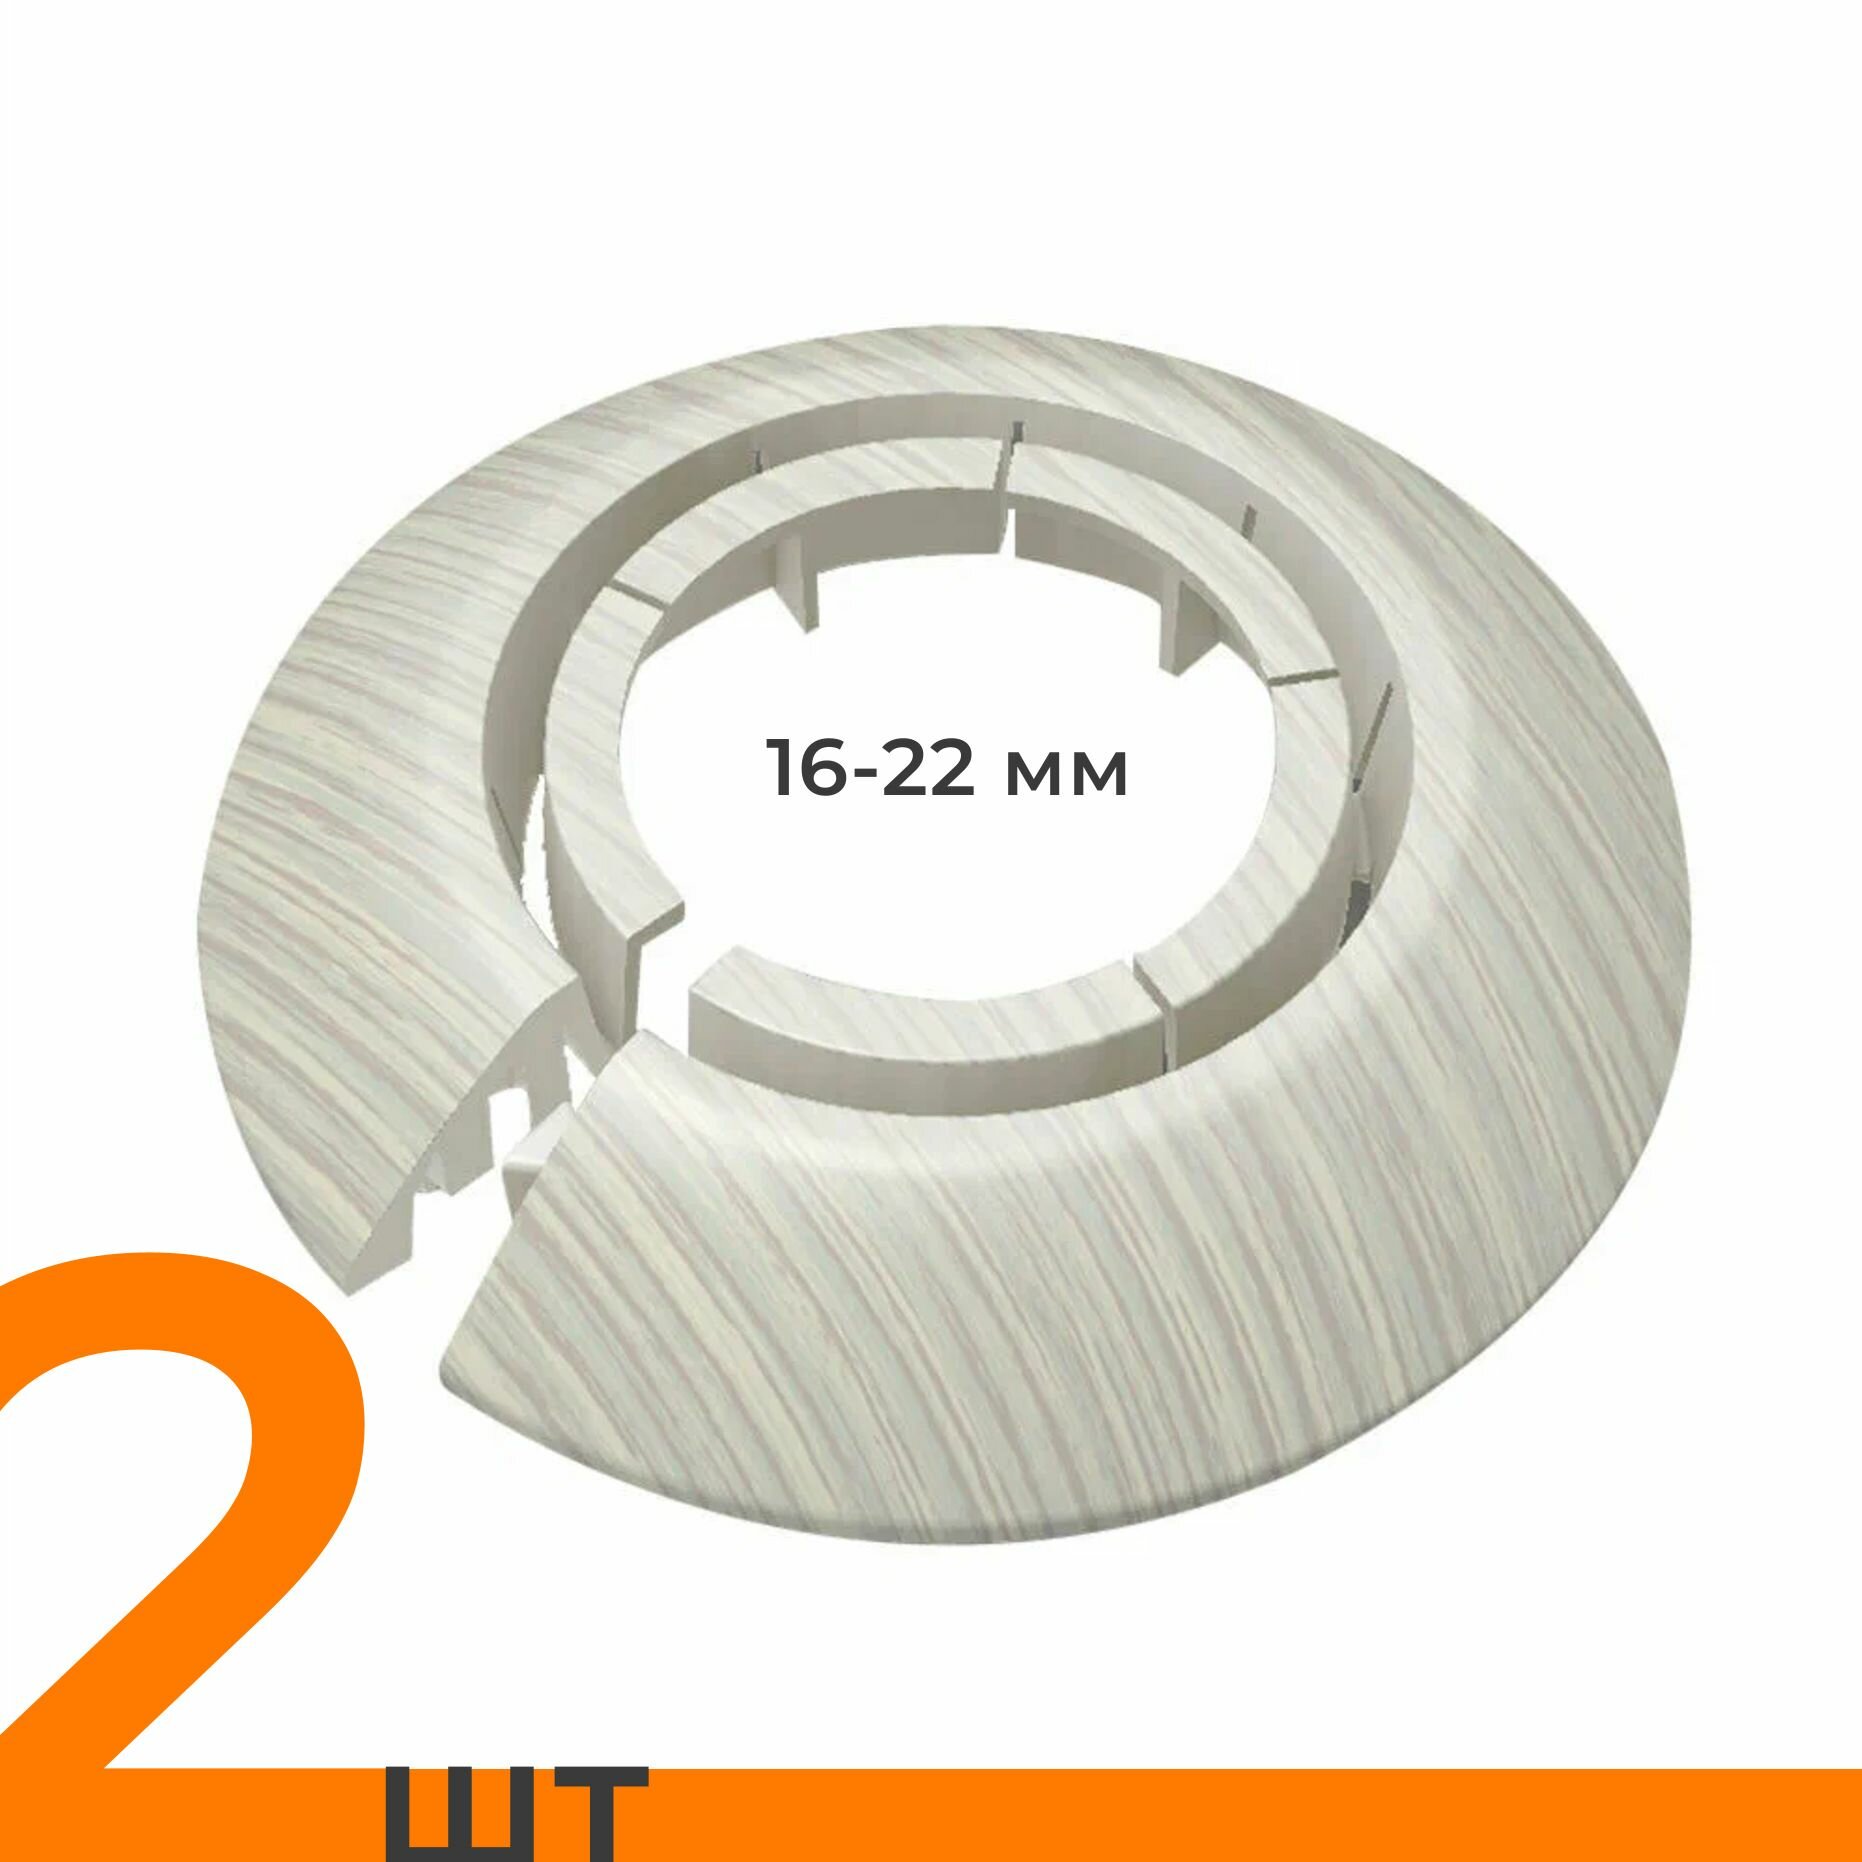 Обвод универсальный IDEAL(Идеал) ясень белый, накладка (розетта) для труб 16 - 22 мм - 2 шт.